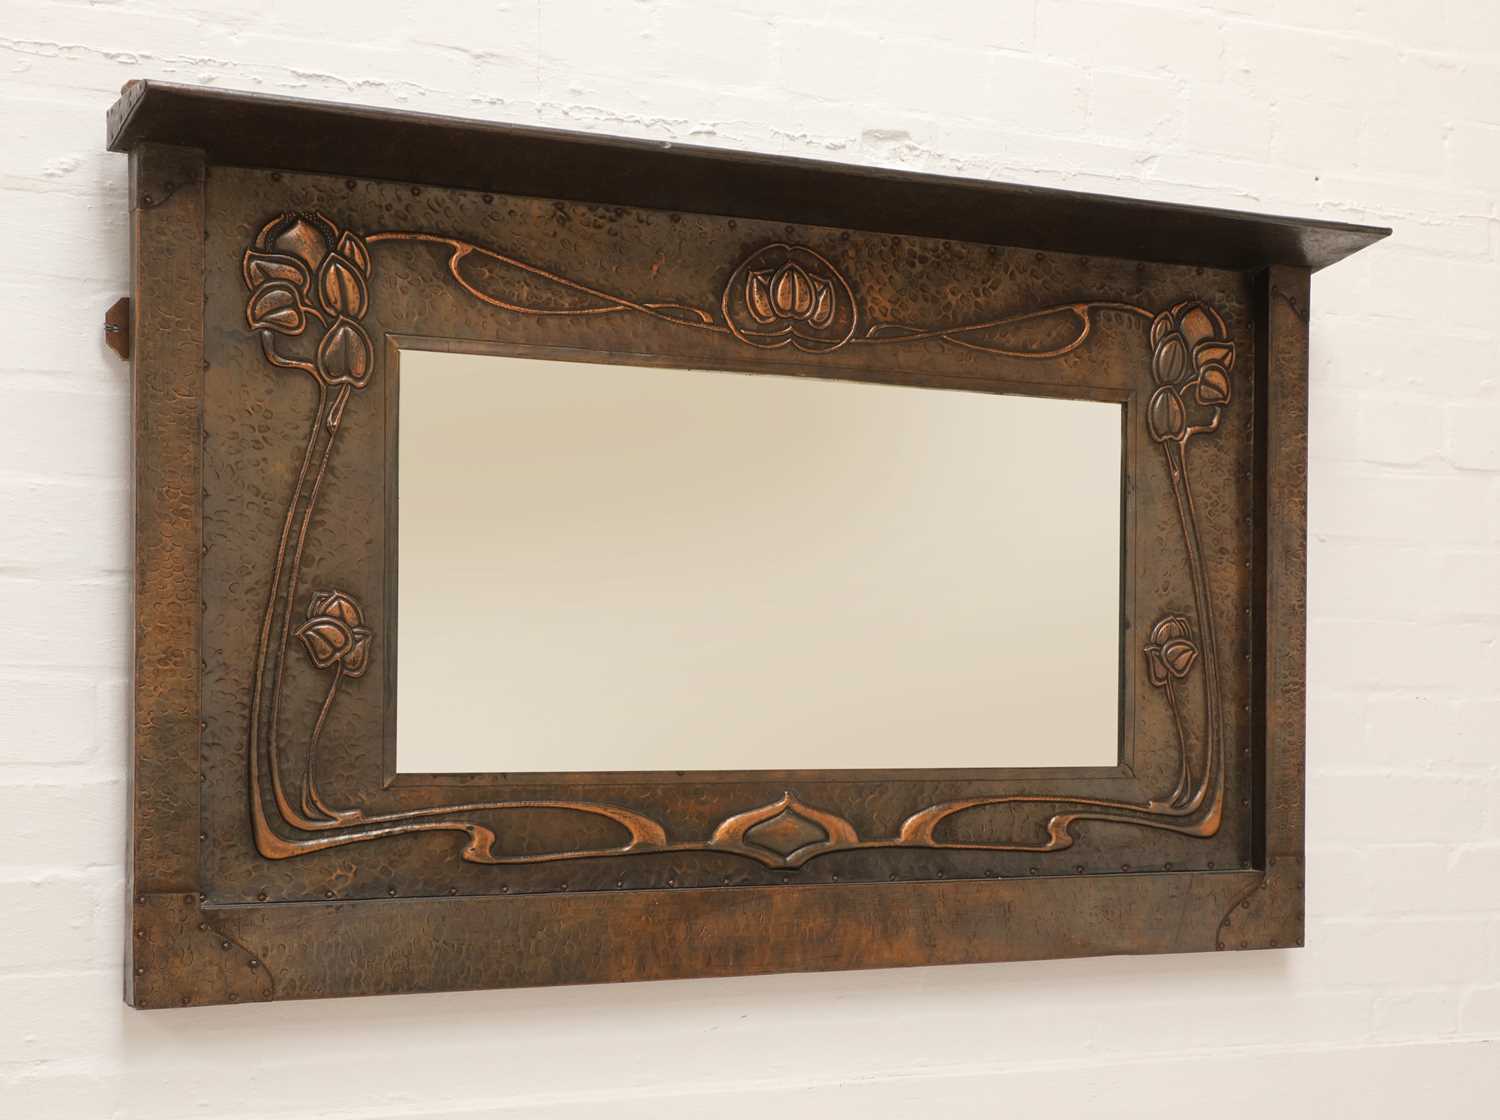 Lot 141 - An Art Nouveau copper mirror